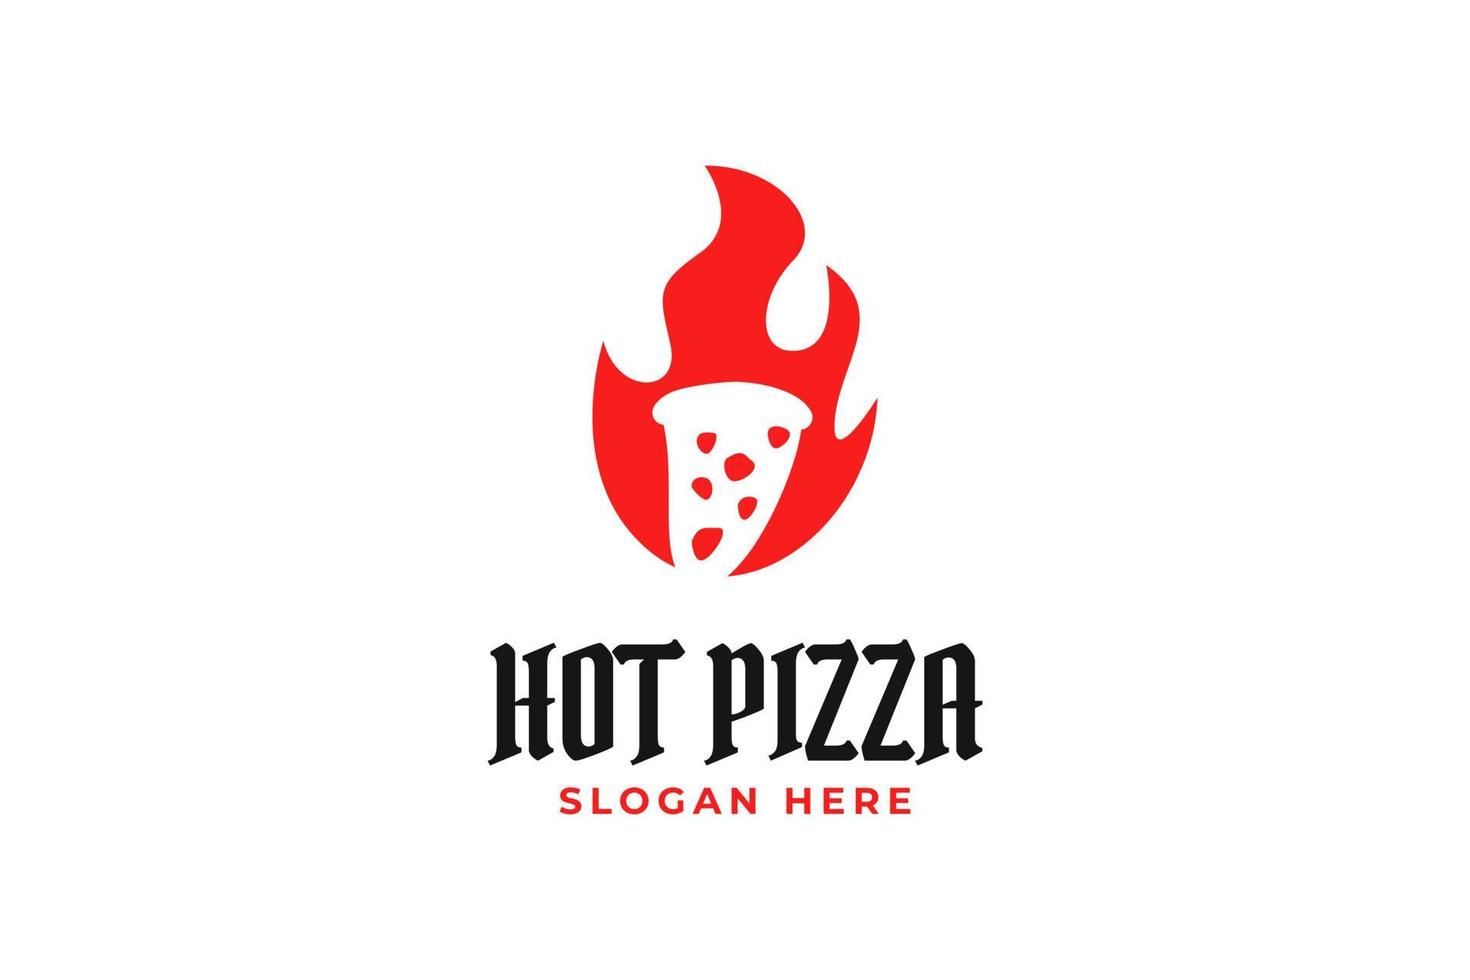 plantilla de vector de diseño de logotipo de pizza de restaurante caliente